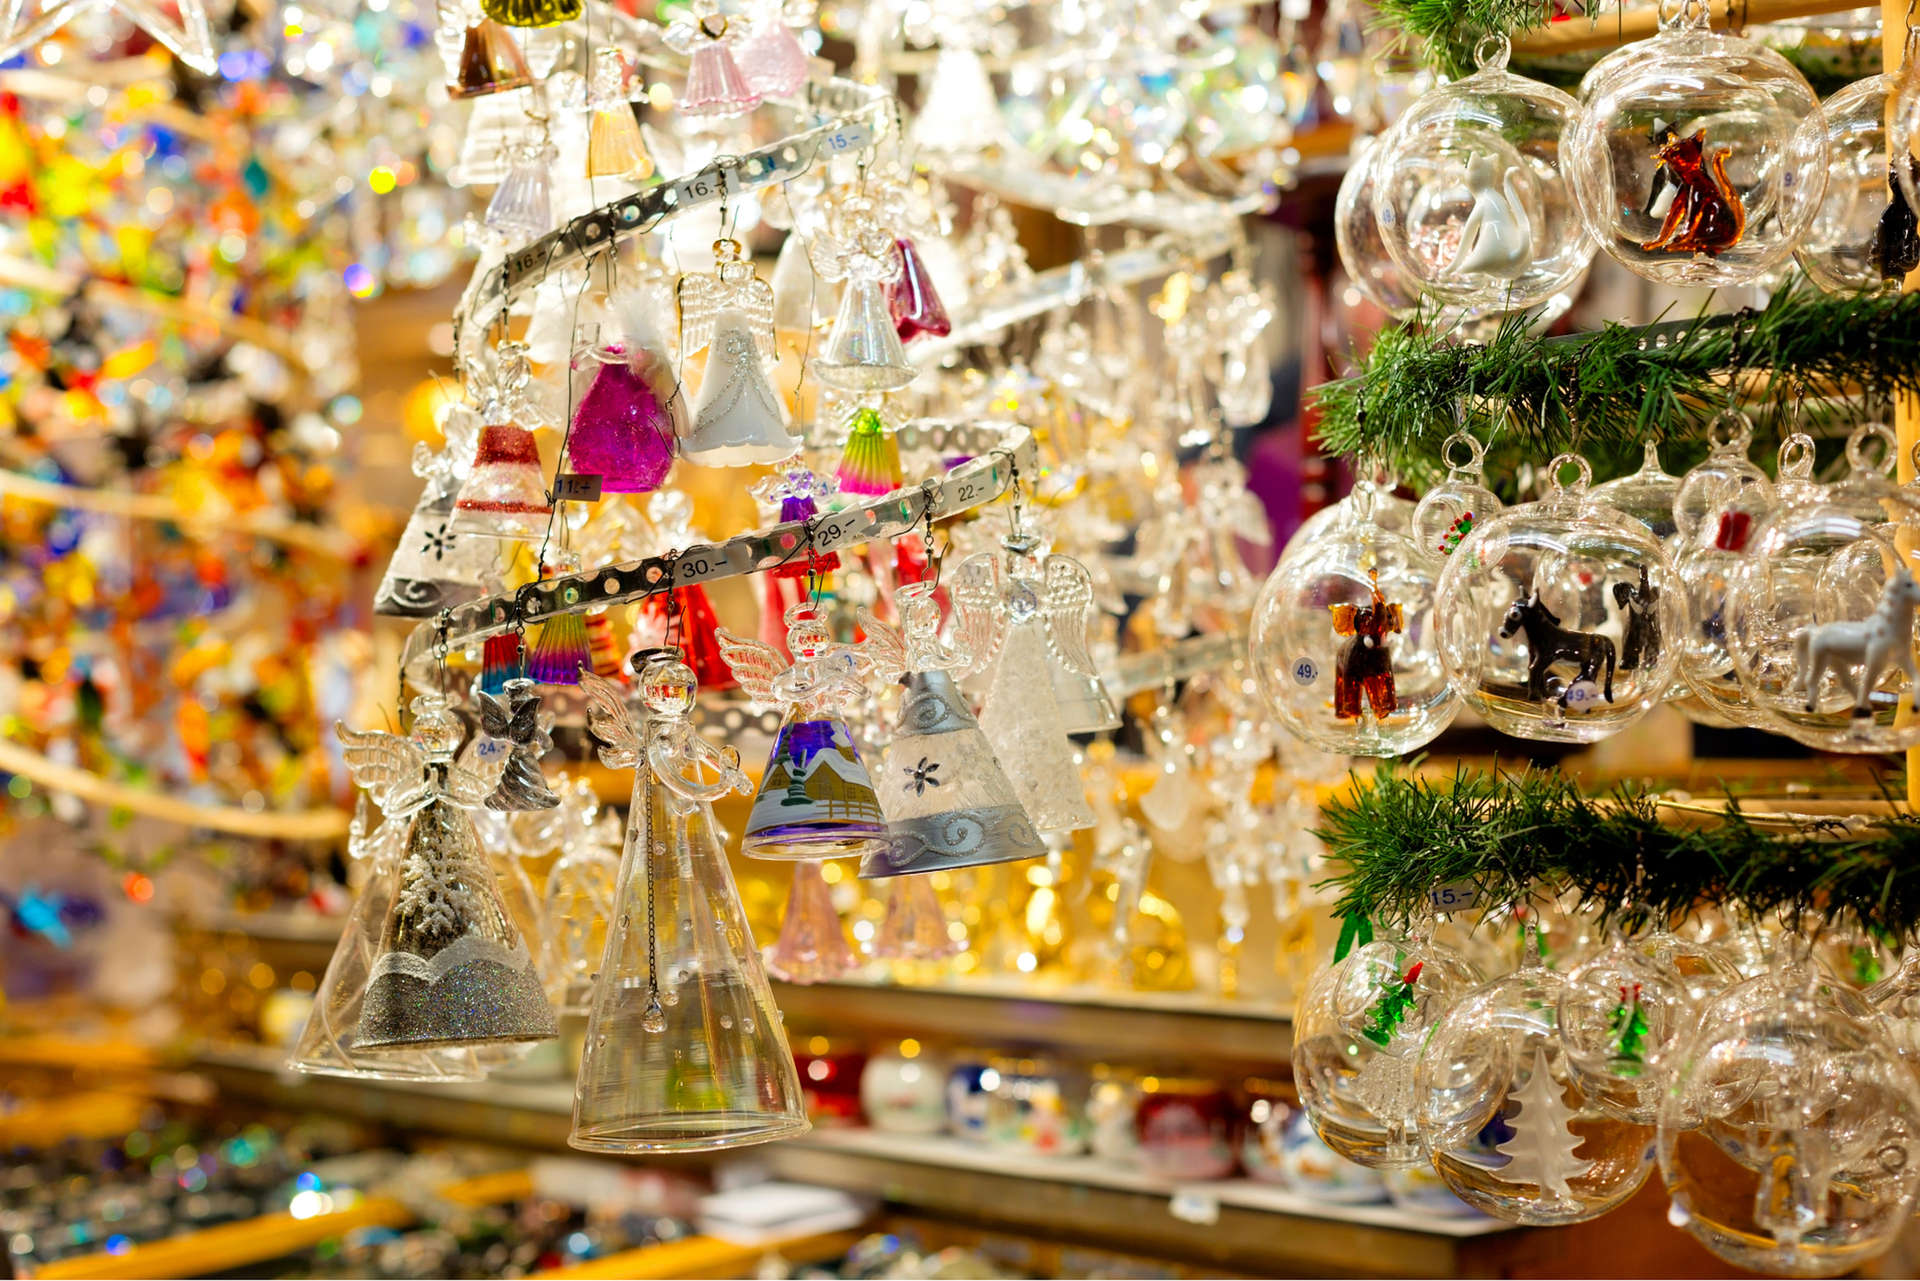 DEr Indoor-Weihnachtsmarkt in Zürich ist eine Besonderheit unter den Weihnachtsmärkten